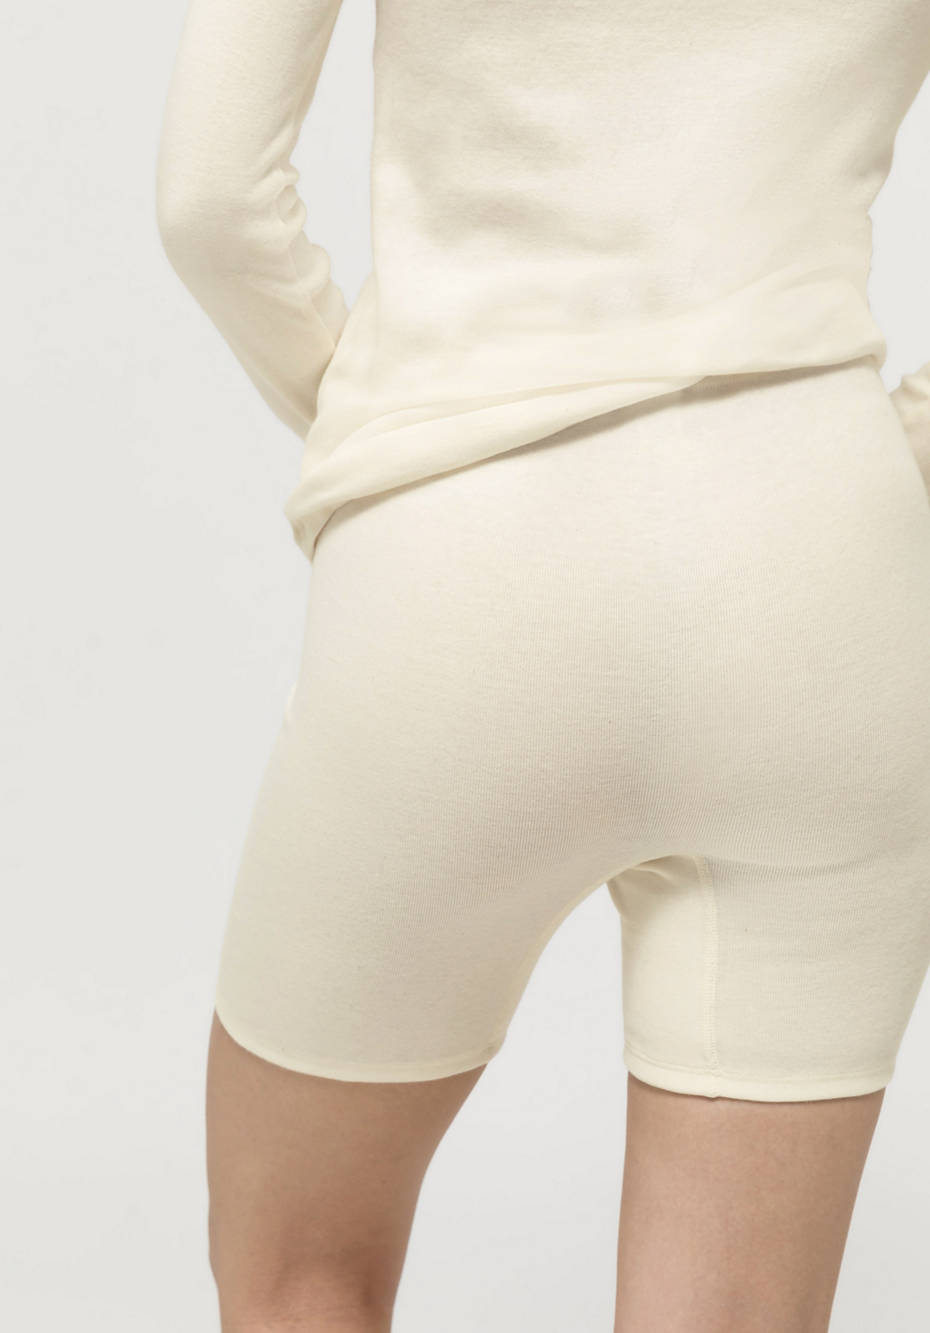 Pants PureNature aus reiner Bio-Baumwolle